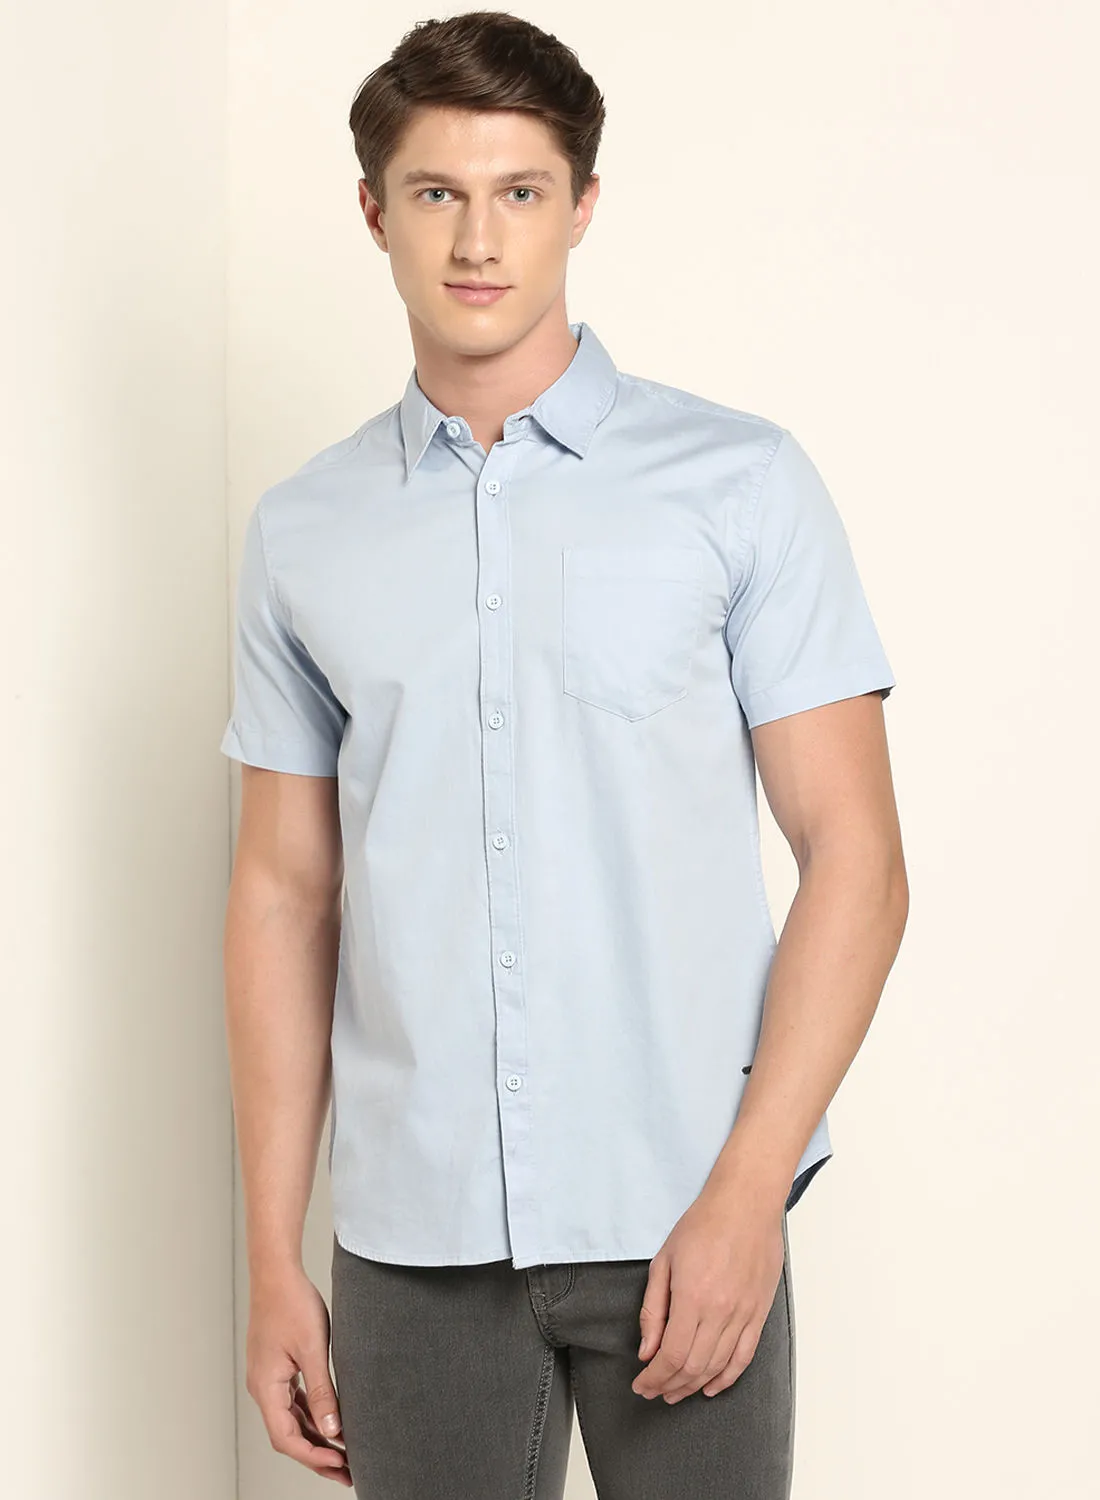 ABOF Basic Regular Fit Short Sleeves Plain Shirt Light Baby Blue